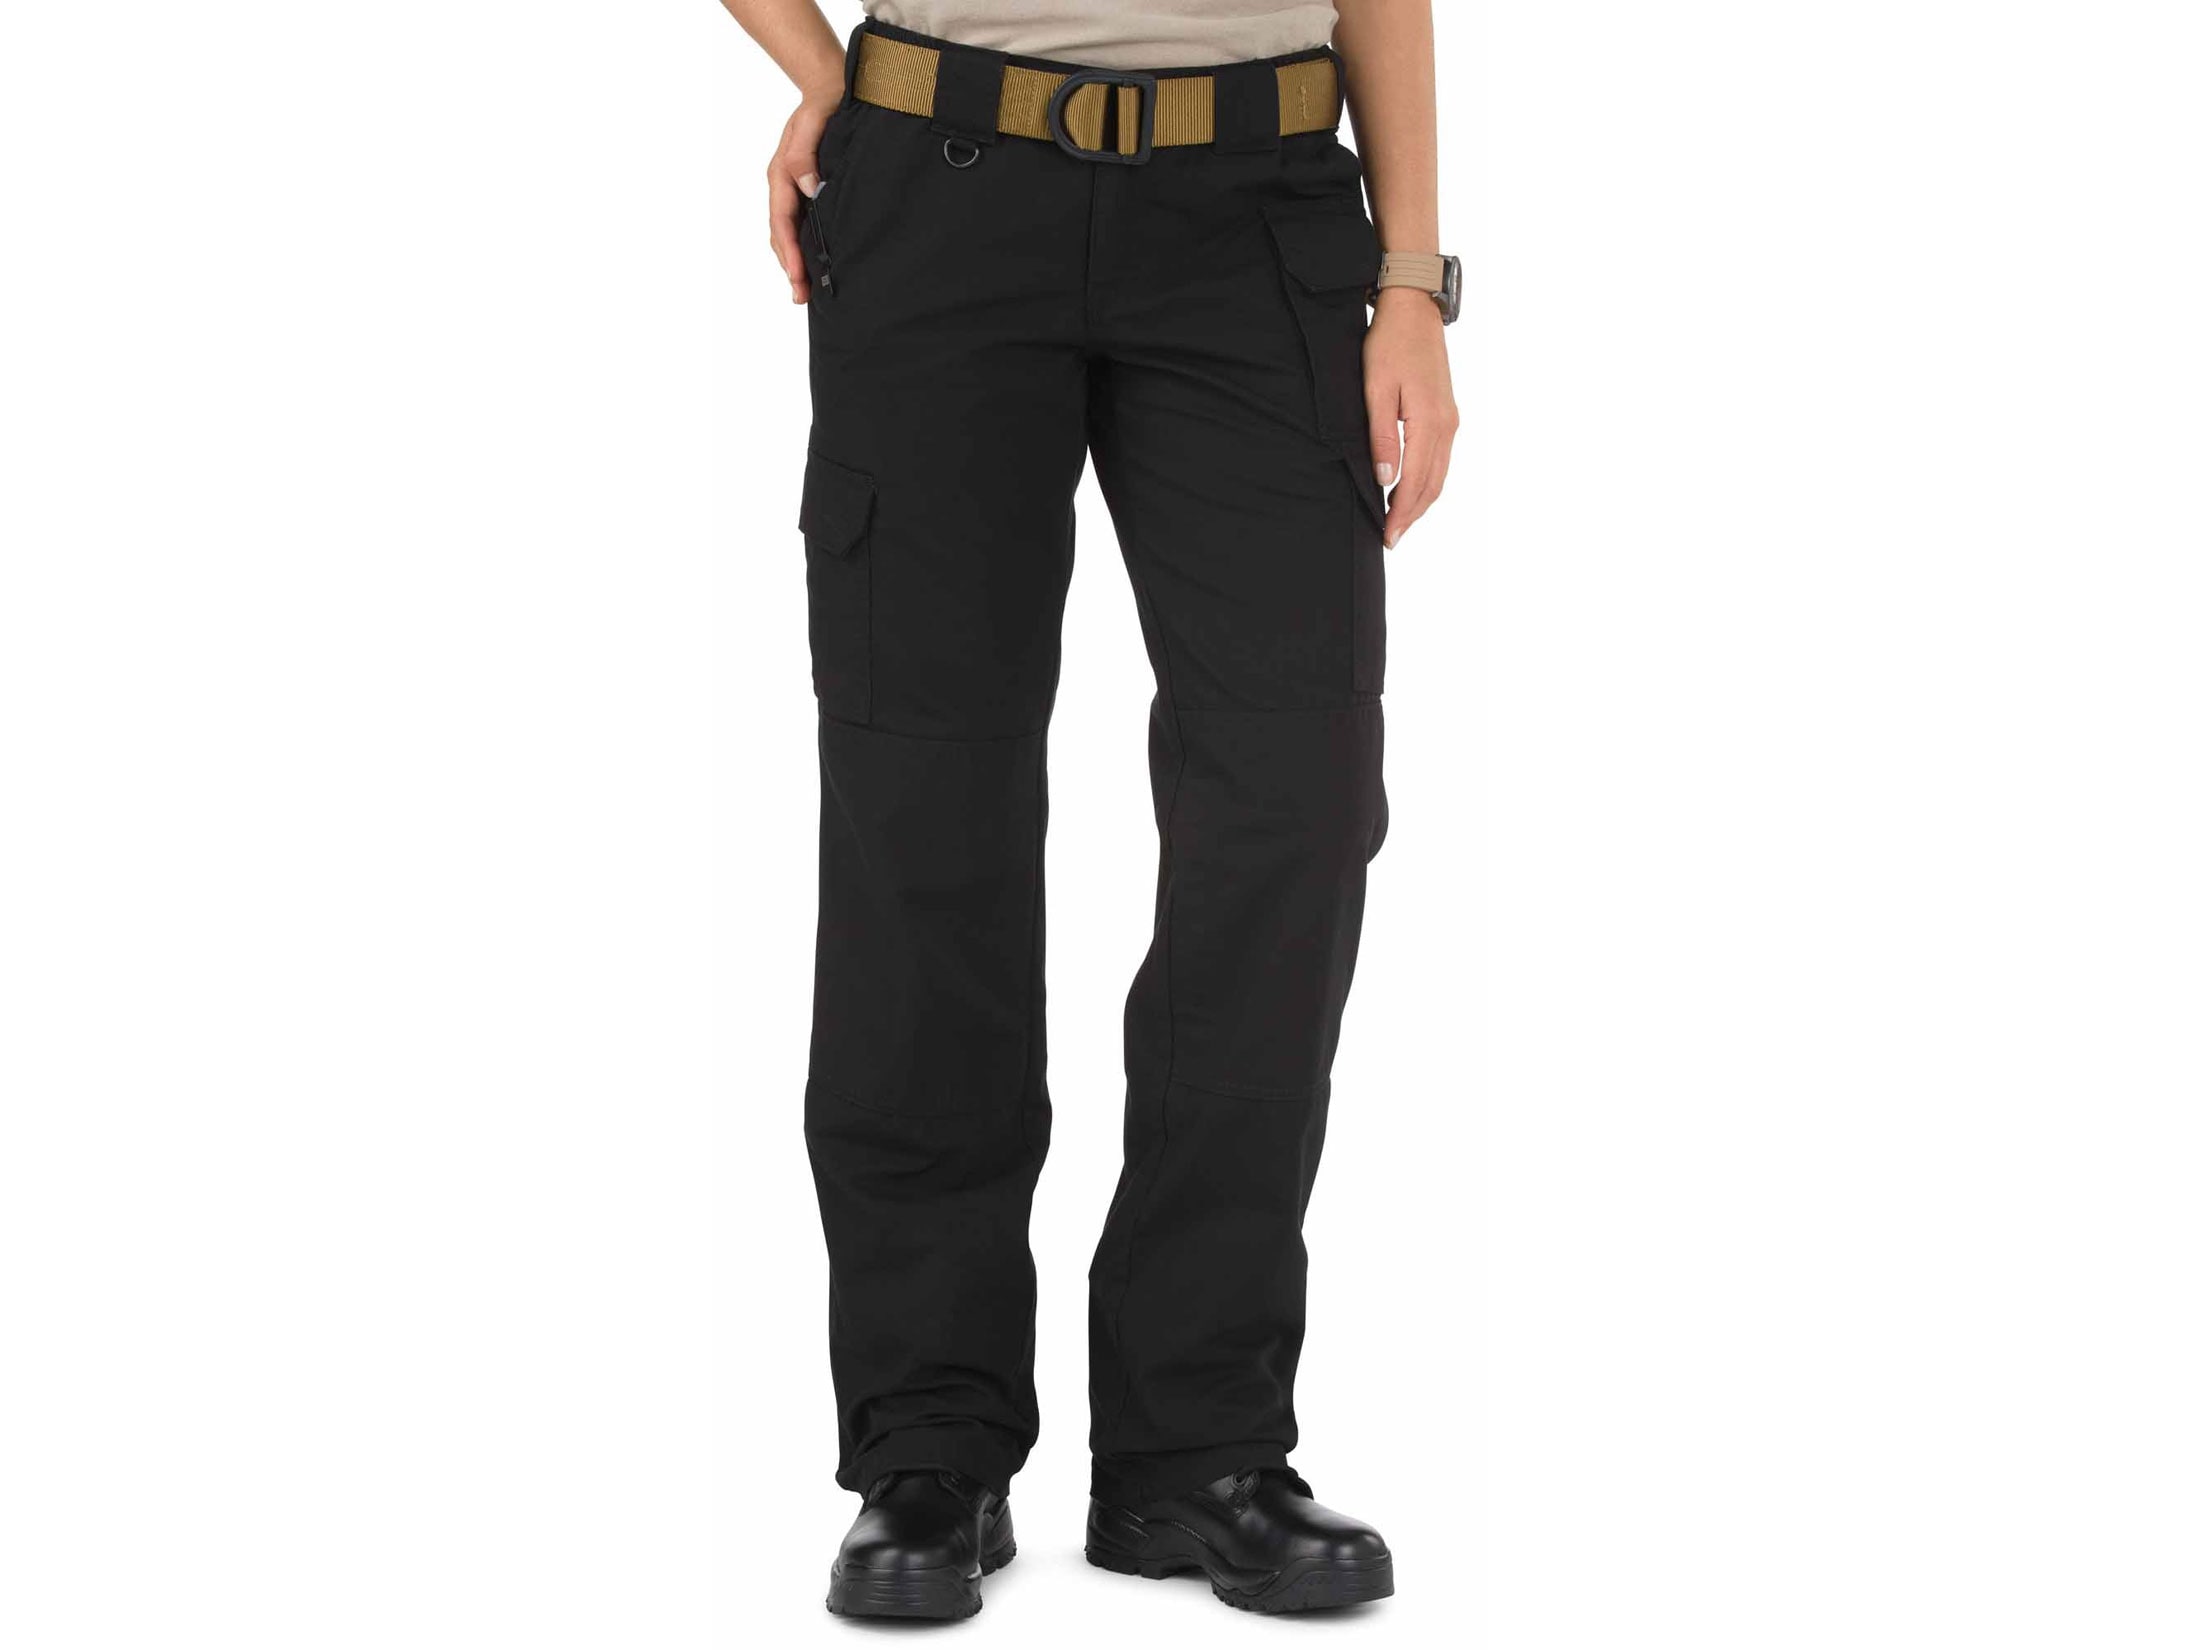 5.11 Women's Tactical Pants Cotton Black Size 6 Regular